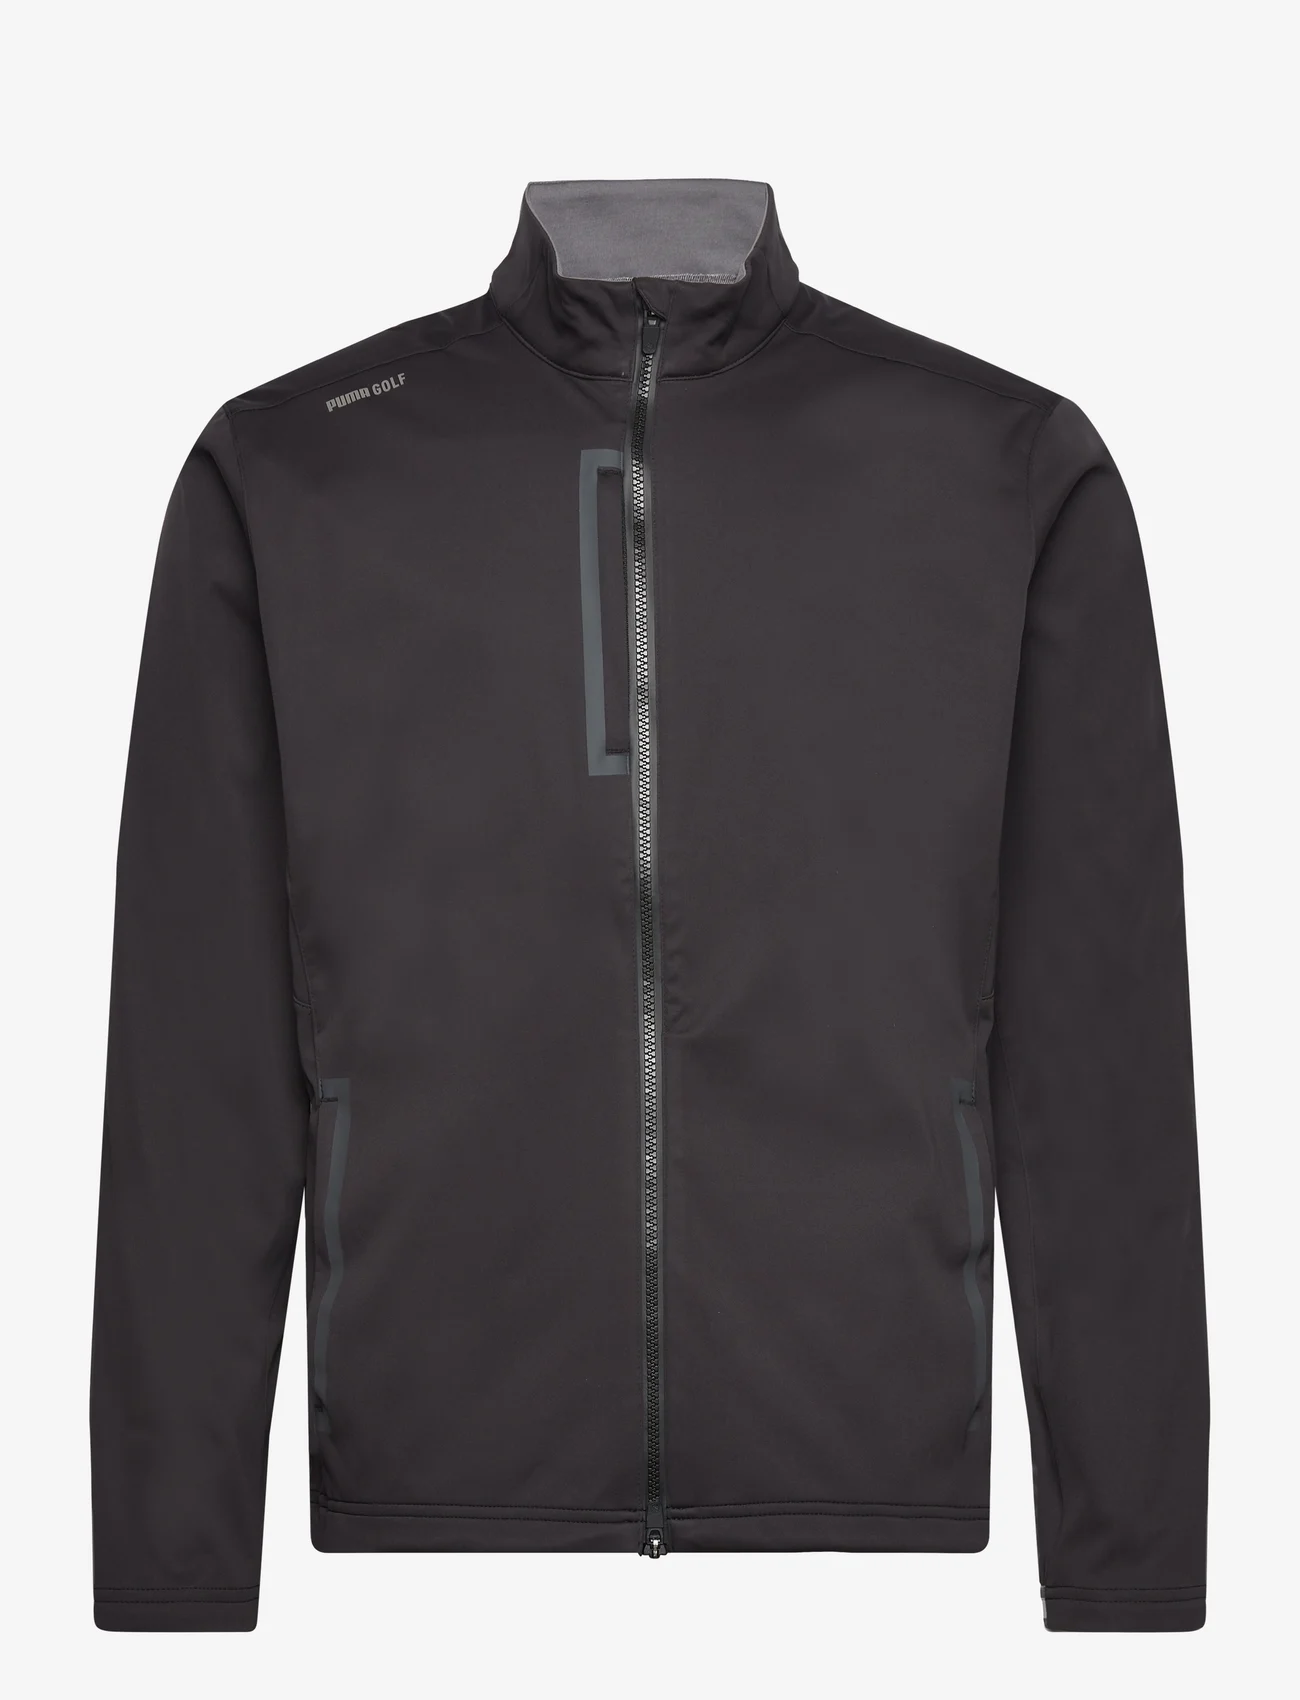 PUMA Golf - Channel Softshell Jacket - golf jackets - puma black-slate sky - 0